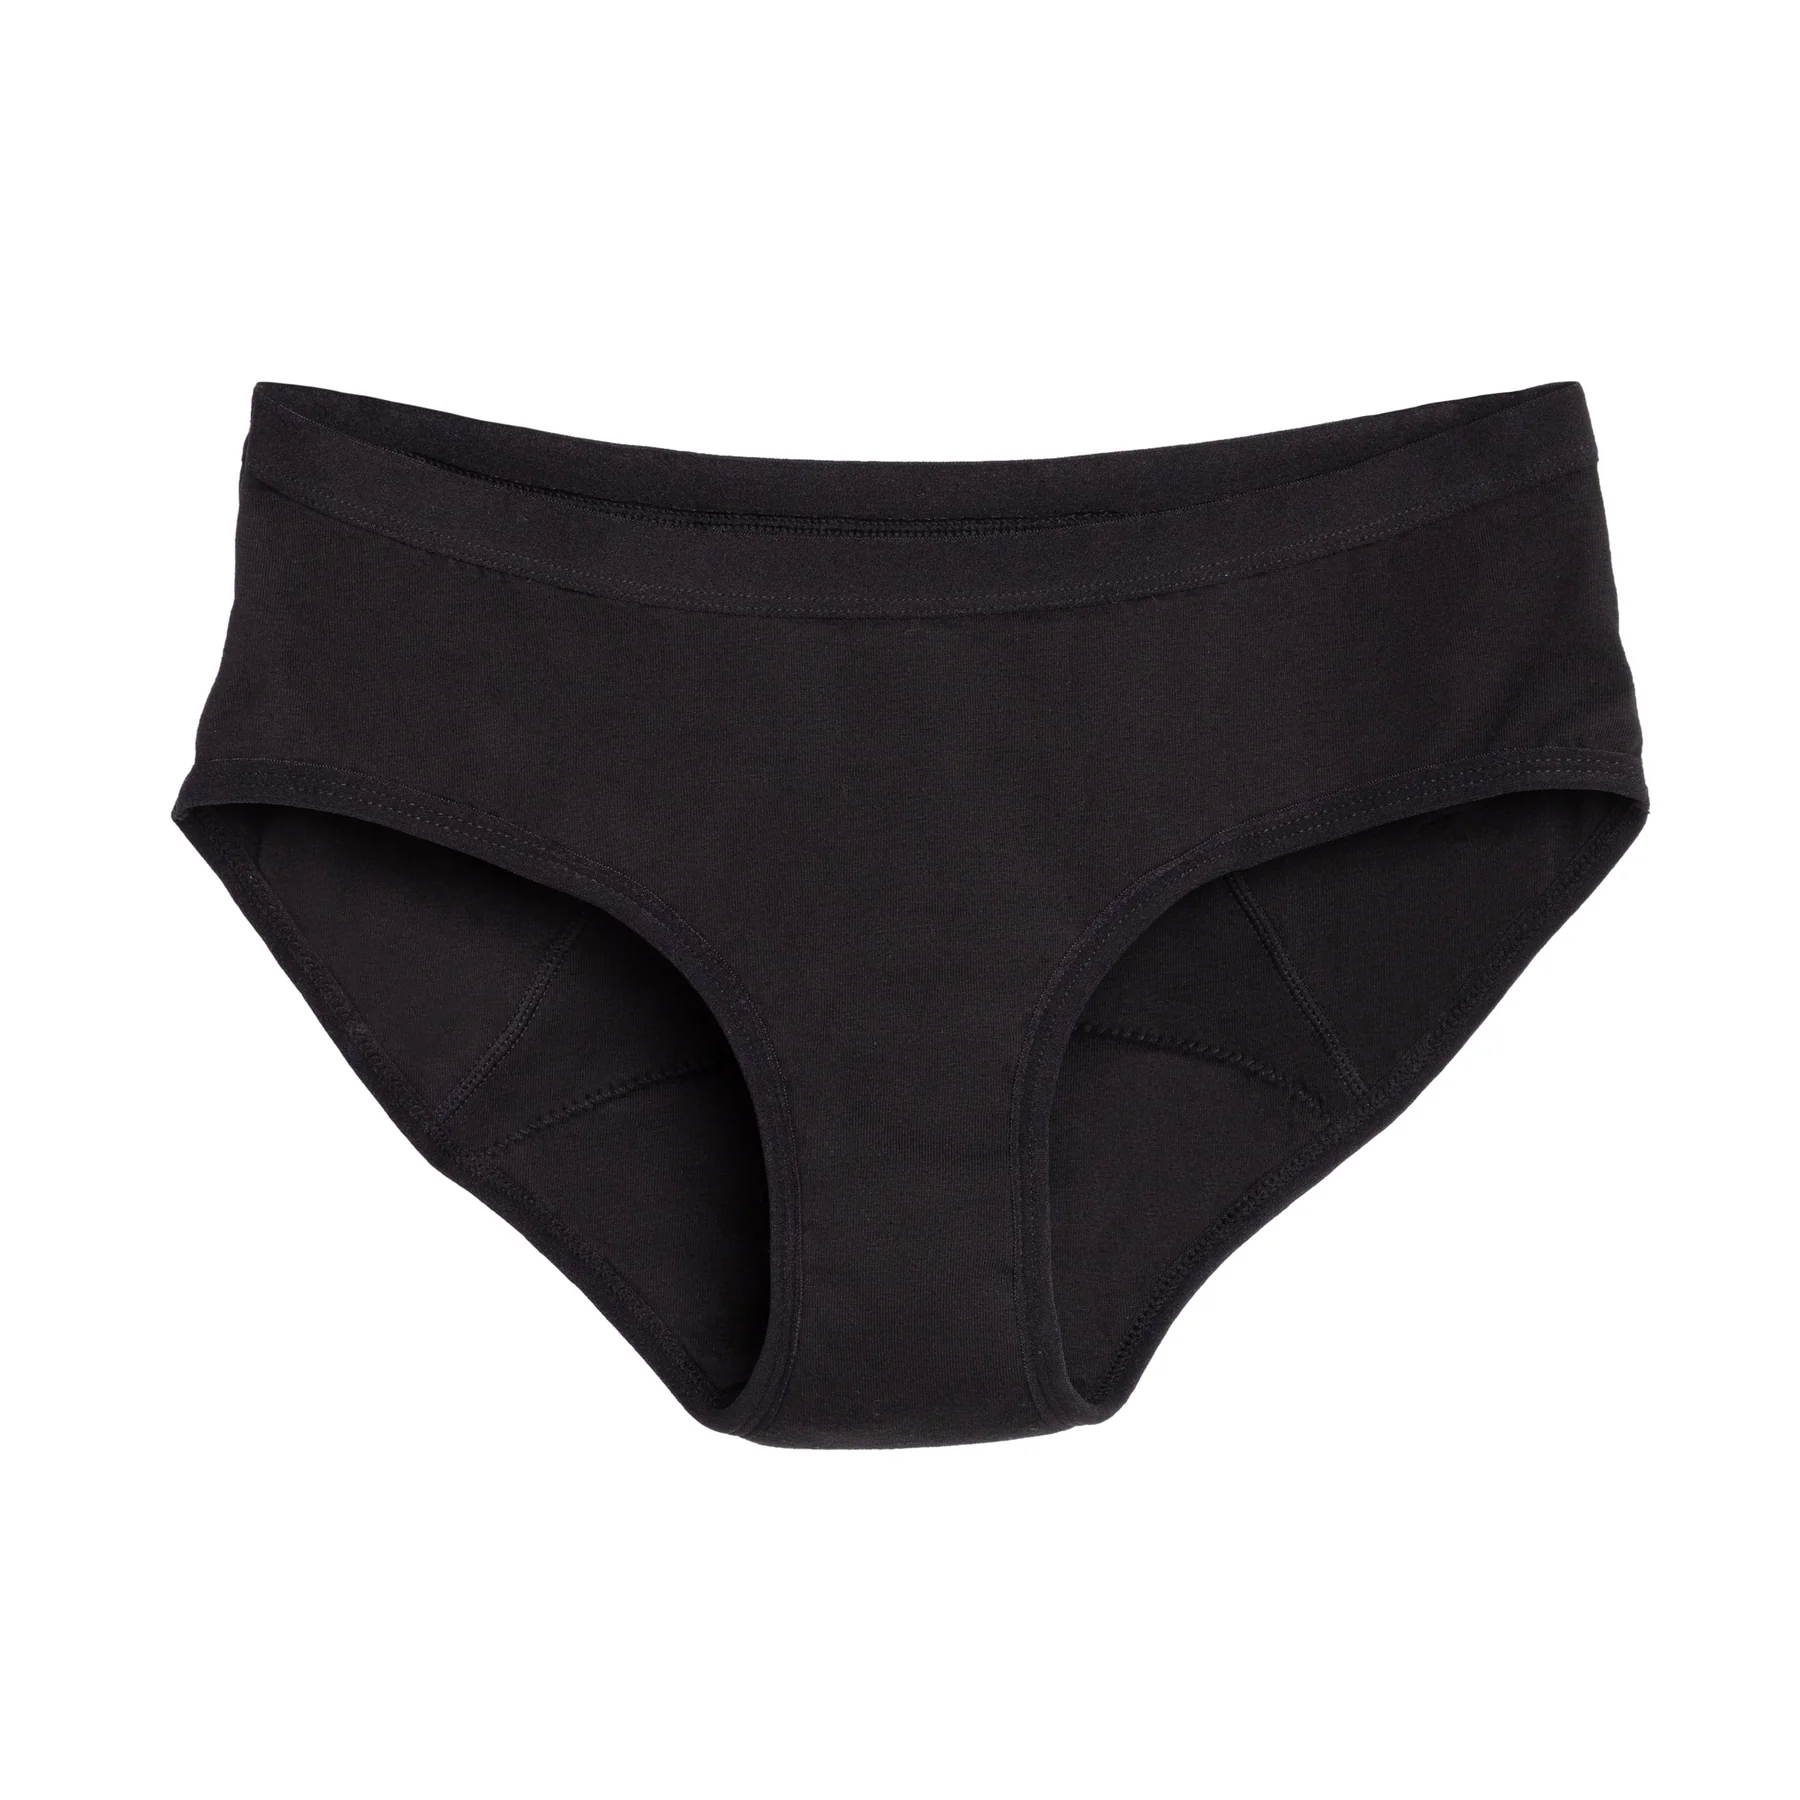 Reusable period underwear color black